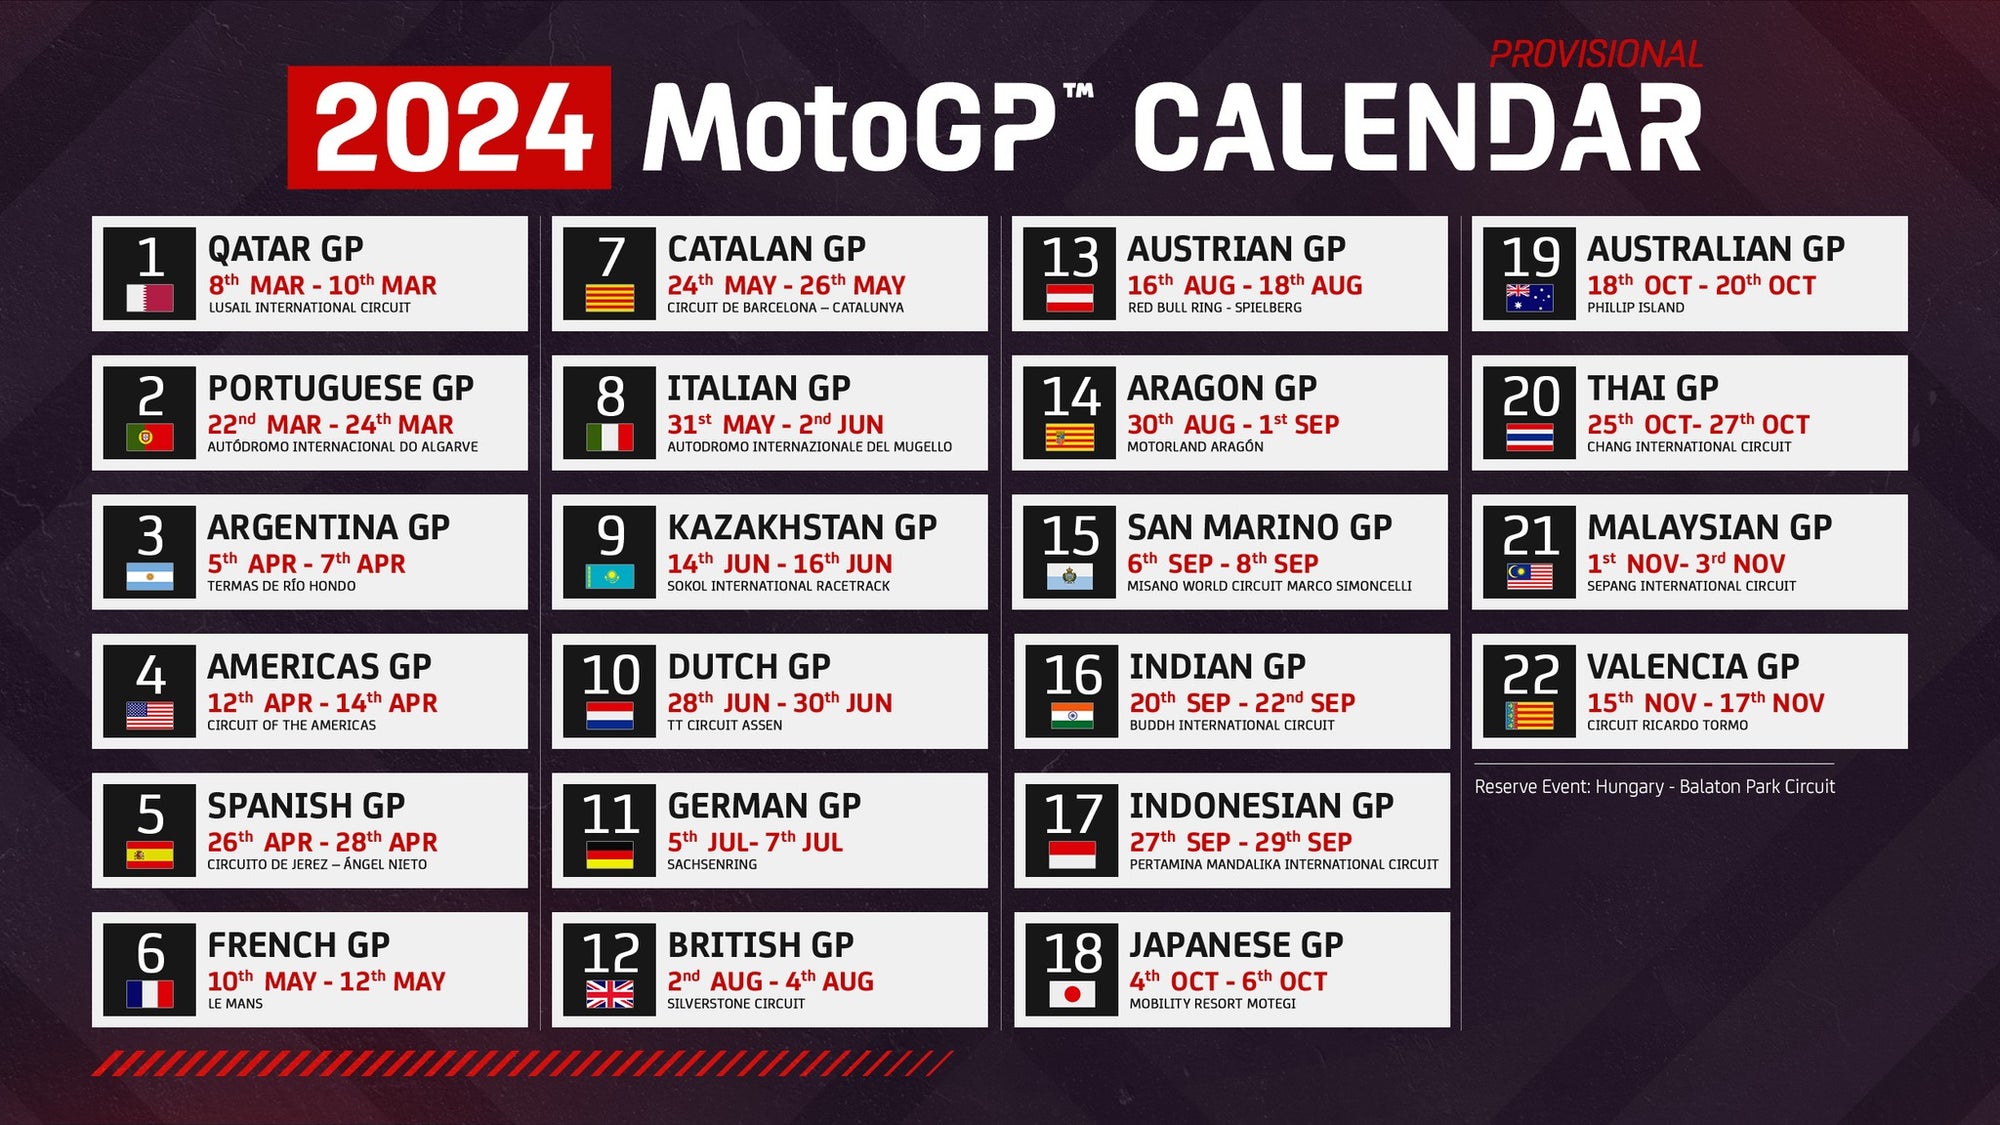 MotoGP calender for 2024